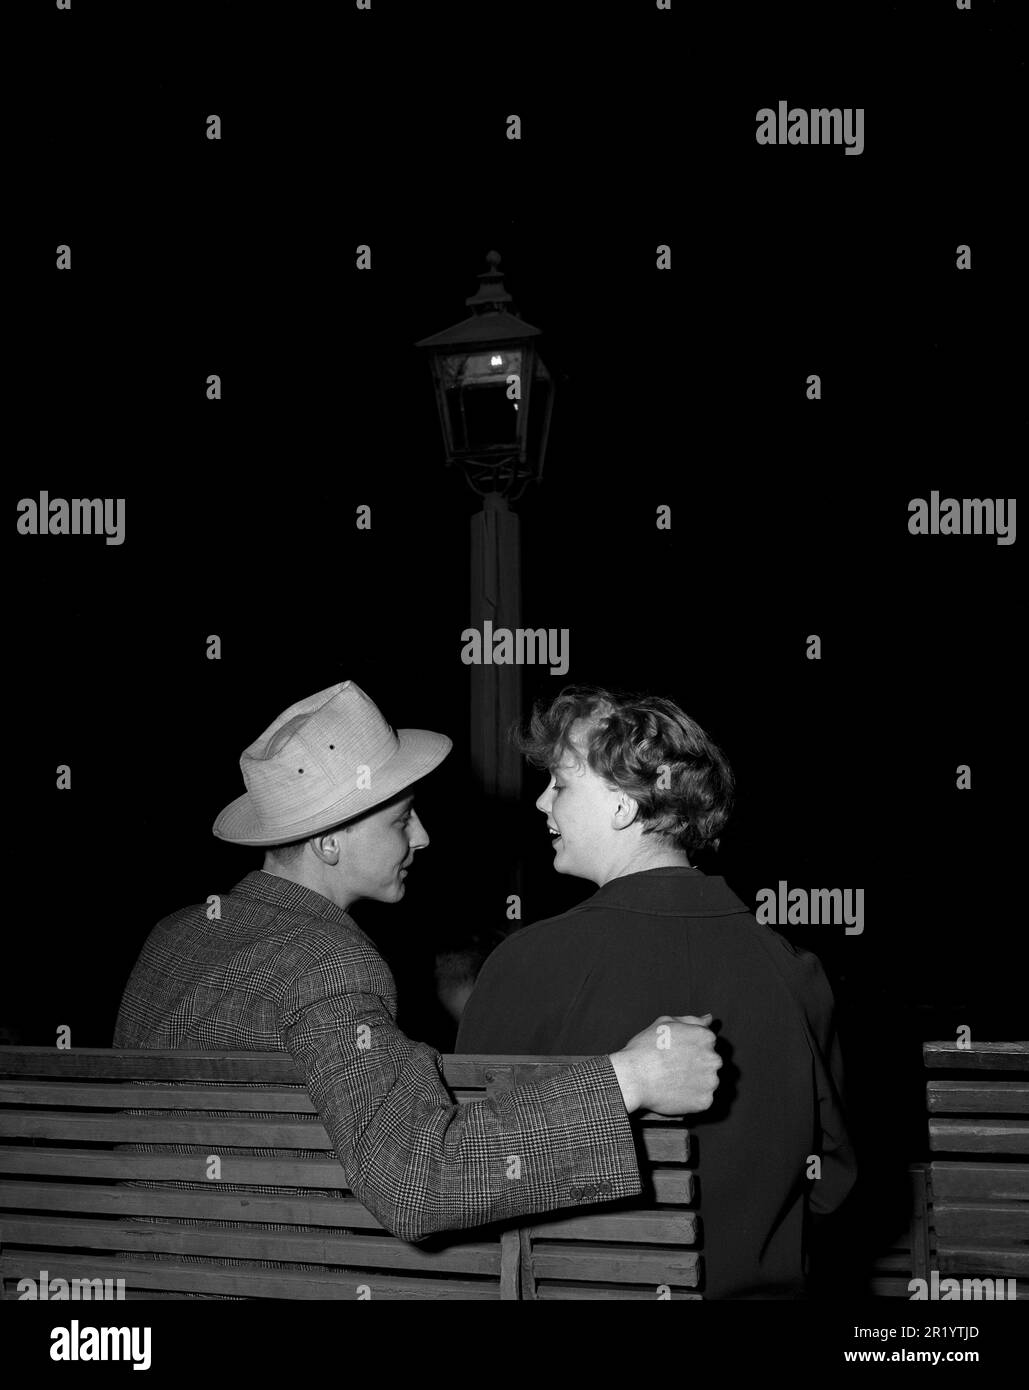 Negli anni '1950s. Una giovane coppia è seduta su una panchina e guarda af sta facendo un tentativo di mettere il suo braccio intorno a lei, facendolo passo dopo passo. Forse una prima data. Svezia 1953 Kristoffersson Ref 15K-21 Foto Stock